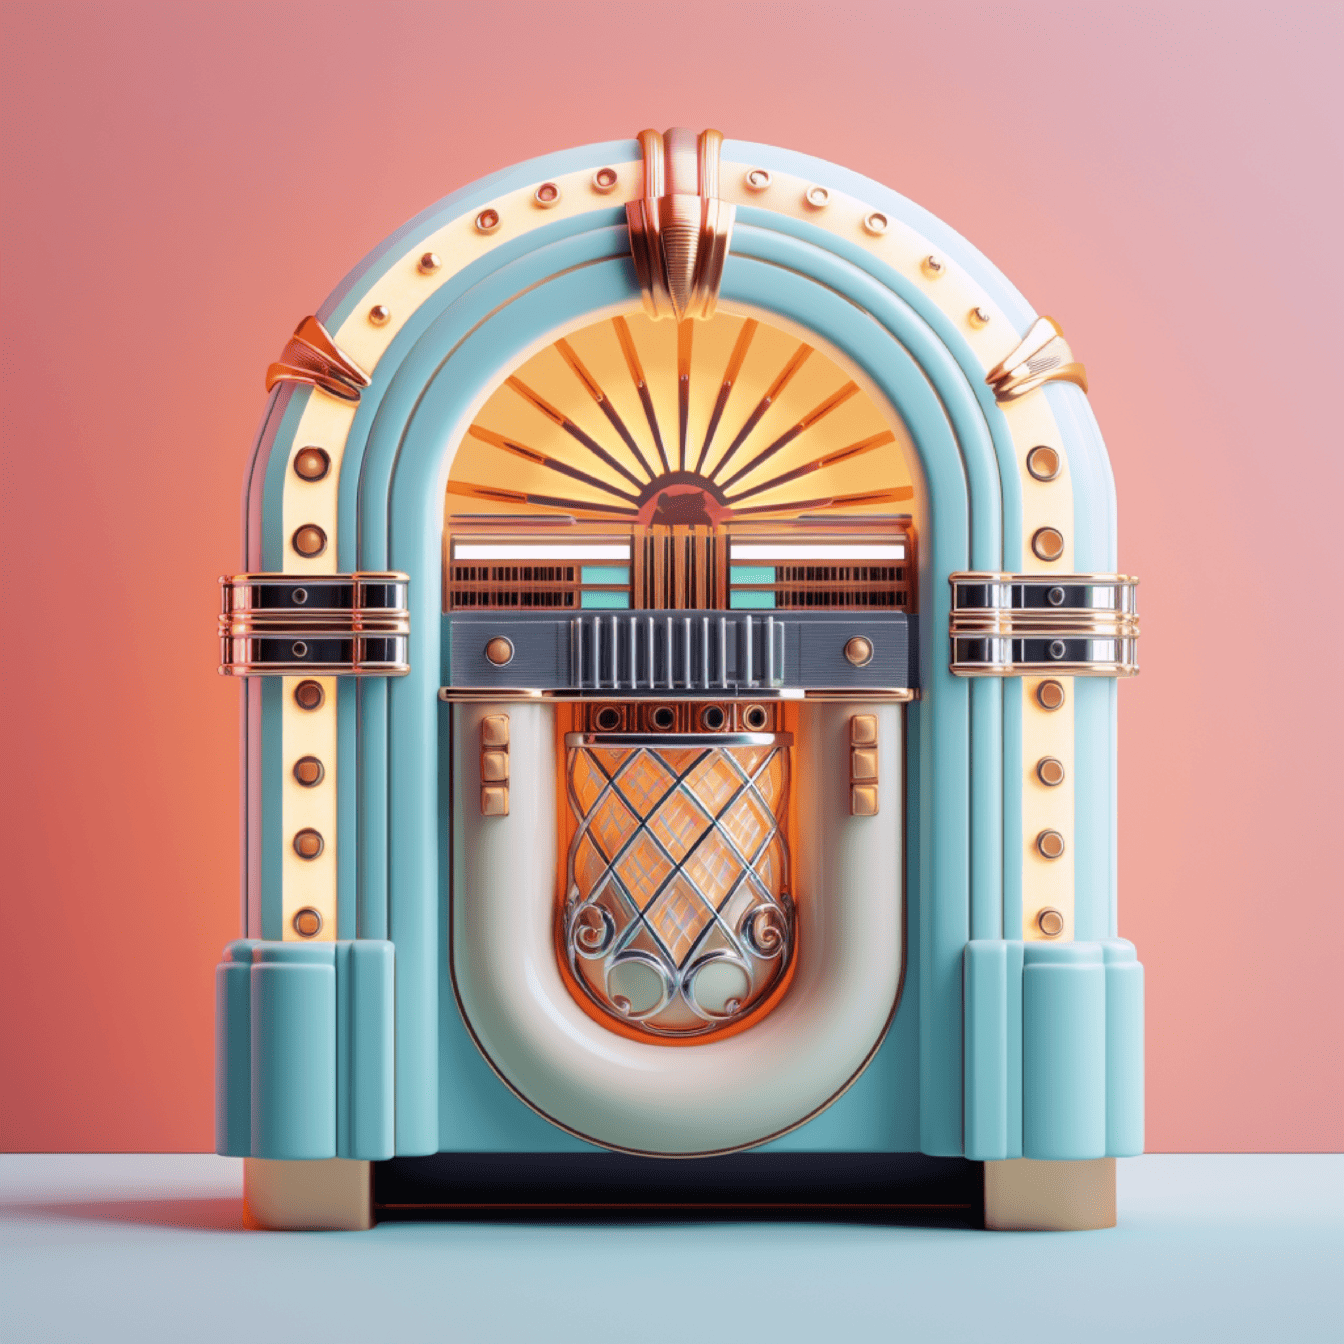 Ilustrasi mesin jukebox musik vintage kuno